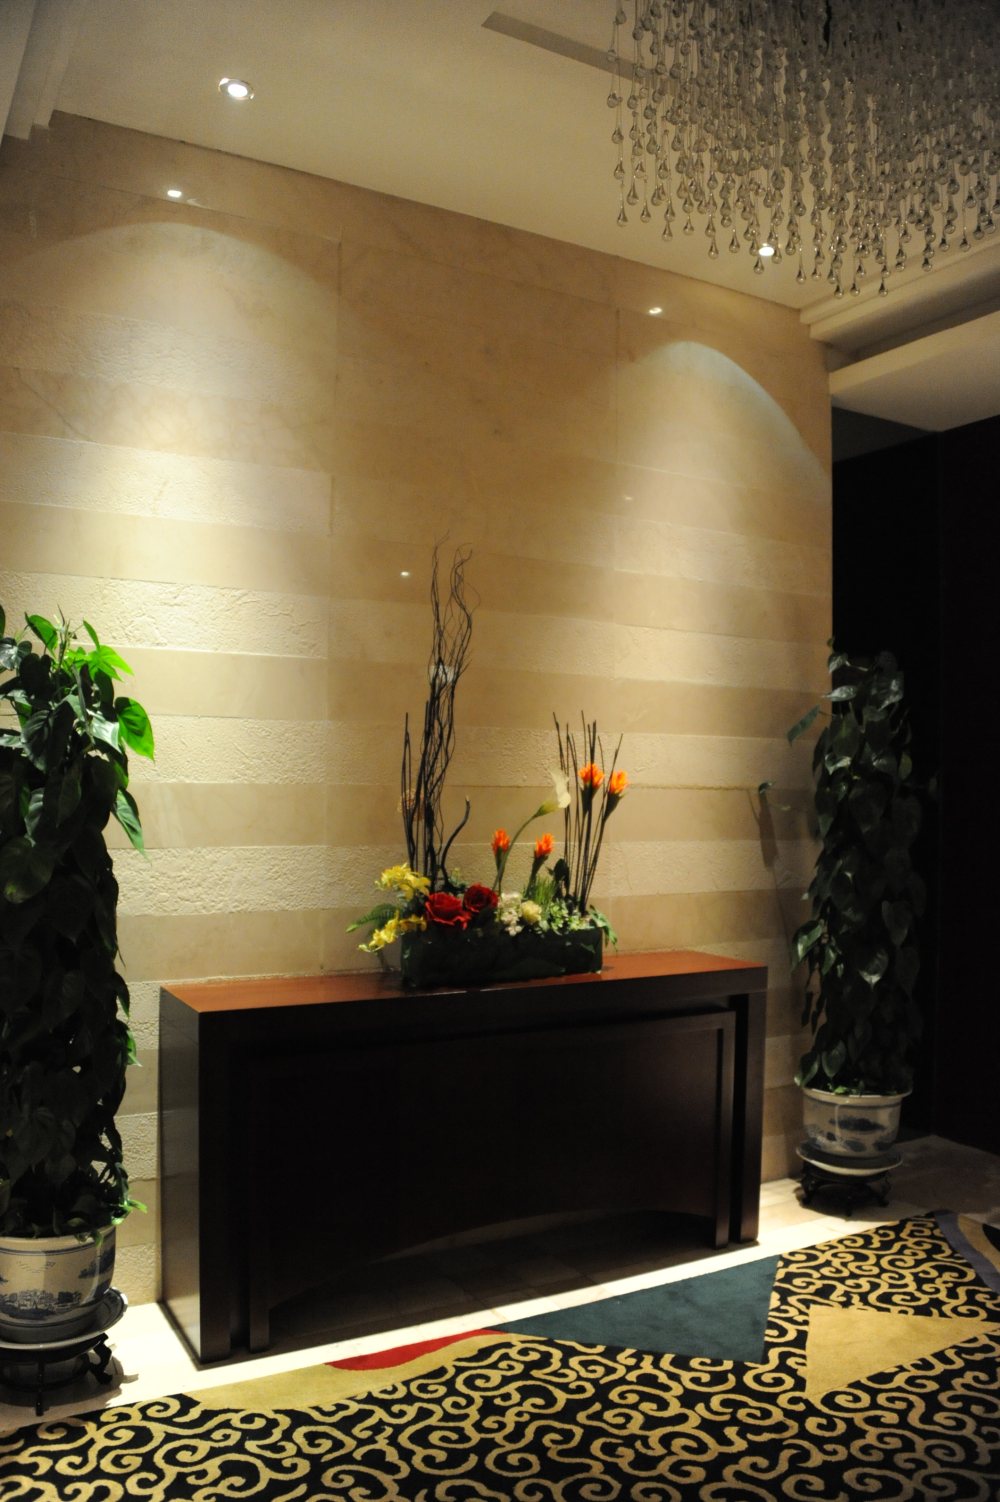 兰州雷迪森大酒店(Lanzhou Leidisen Hotel)_DSC_8339.JPG